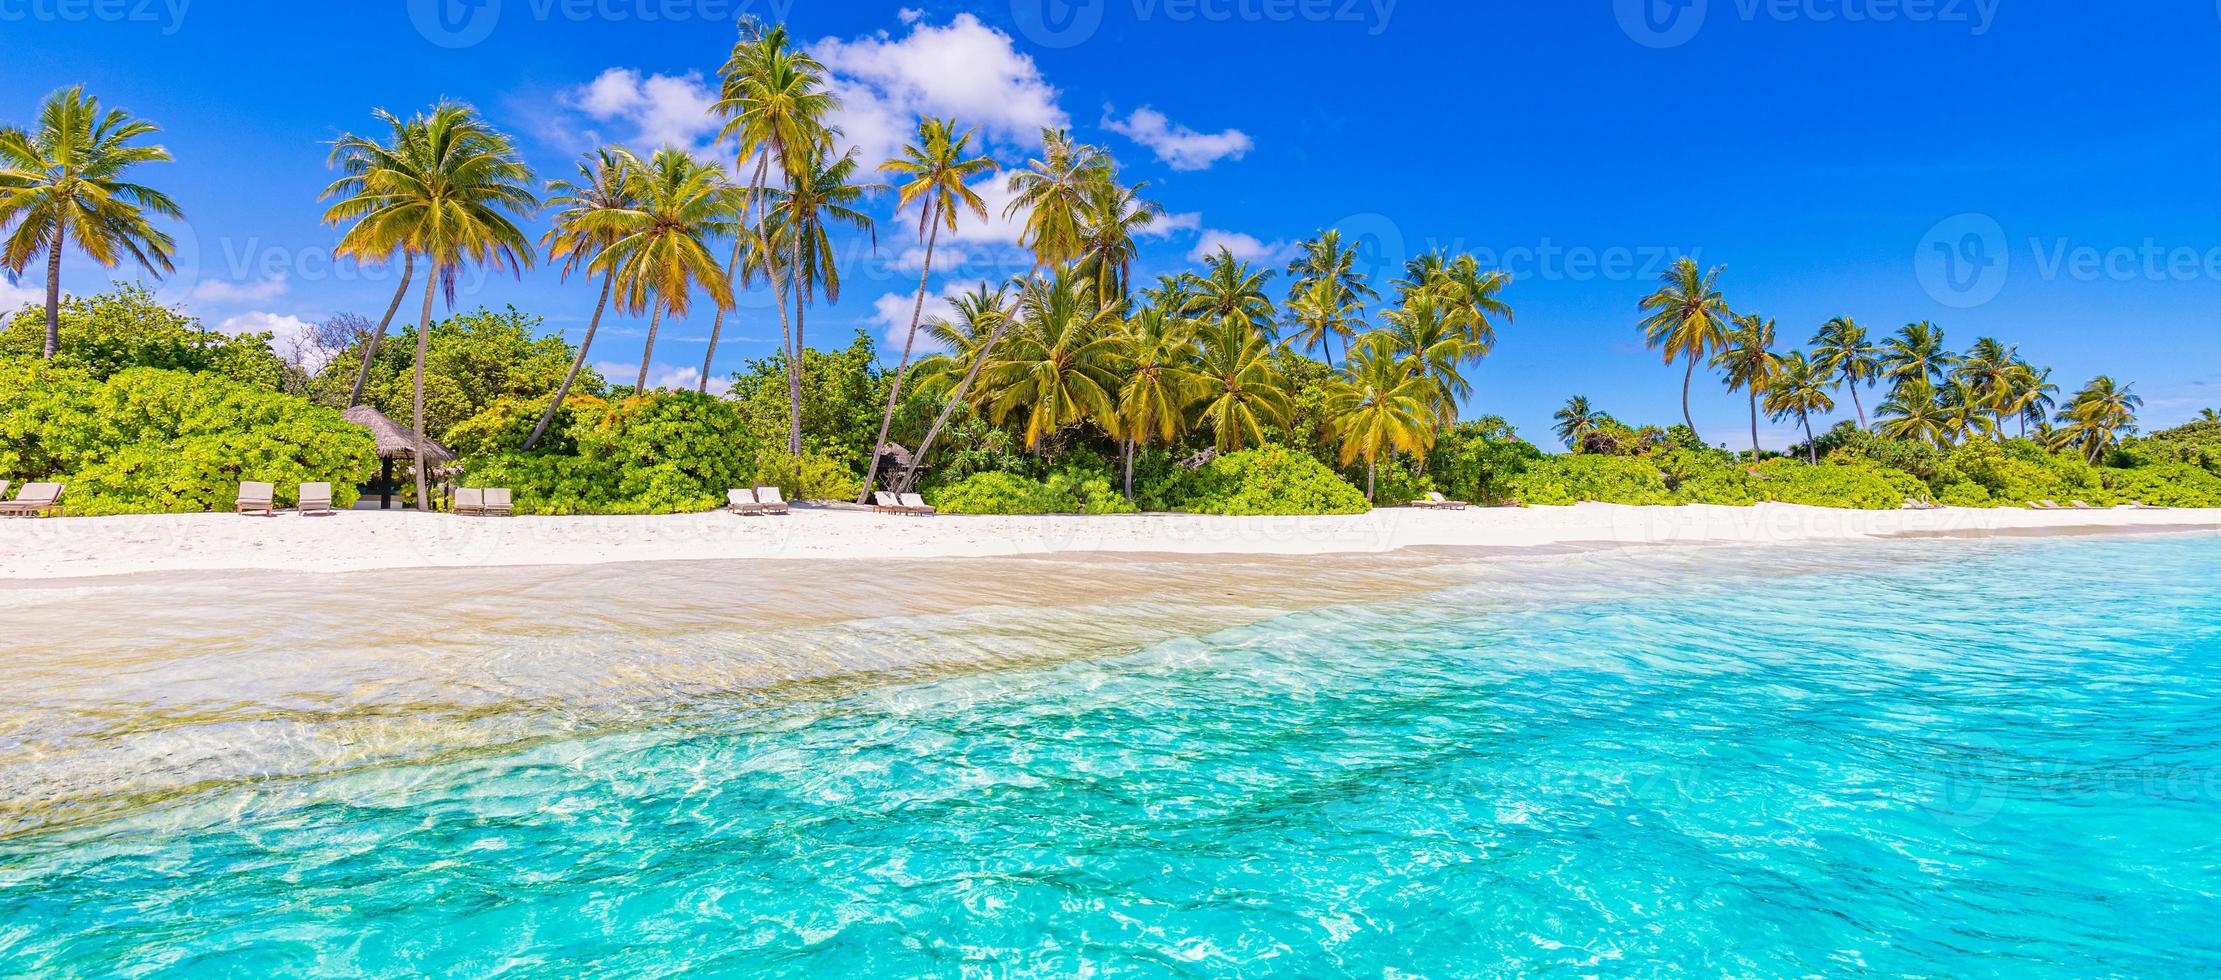 playa panorámica de la isla de maldivas. panorama de verano de paisaje tropical, arena blanca con mar de palmeras. destino de vacaciones de viaje de lujo. paisaje de playa exótico. naturaleza asombrosa, relax, libertad naturaleza foto